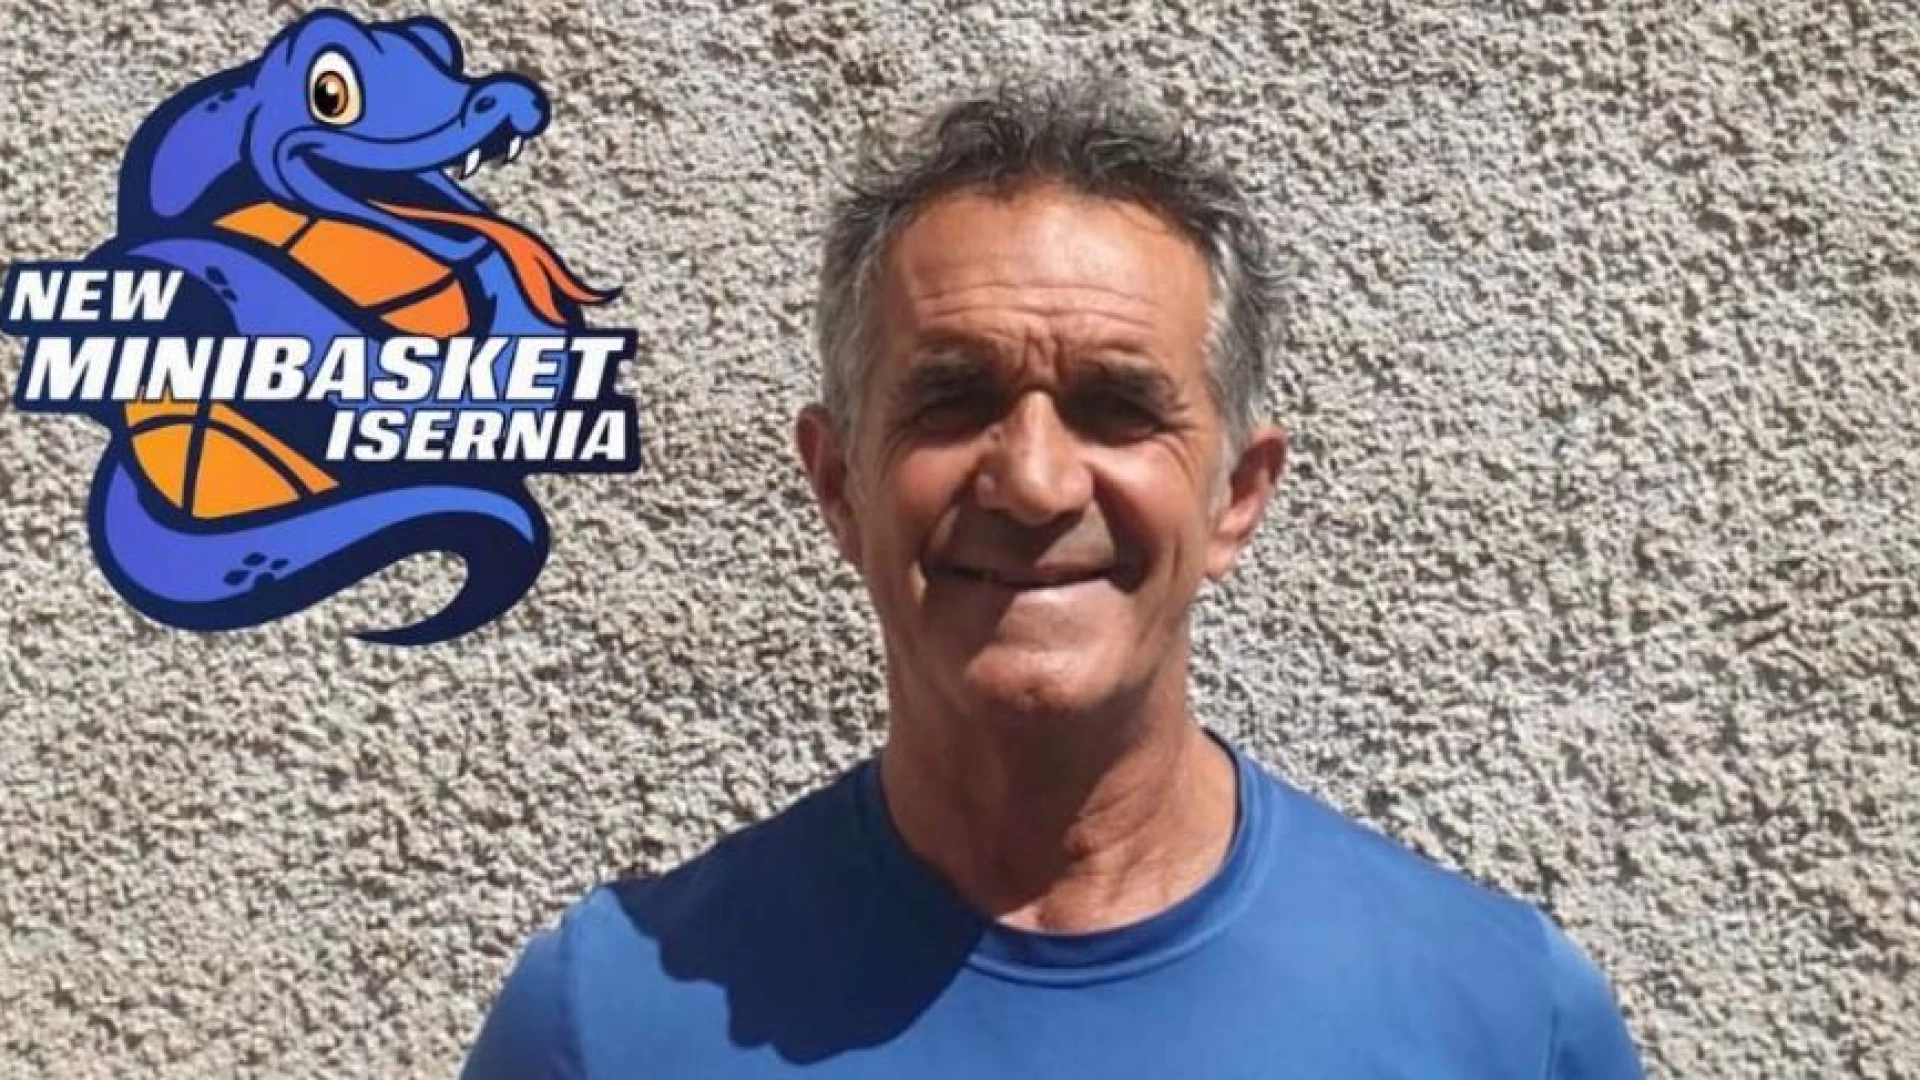 Prestigioso riconoscimento per Tiziano Rosignoli, coach della New Minibasket Isernia